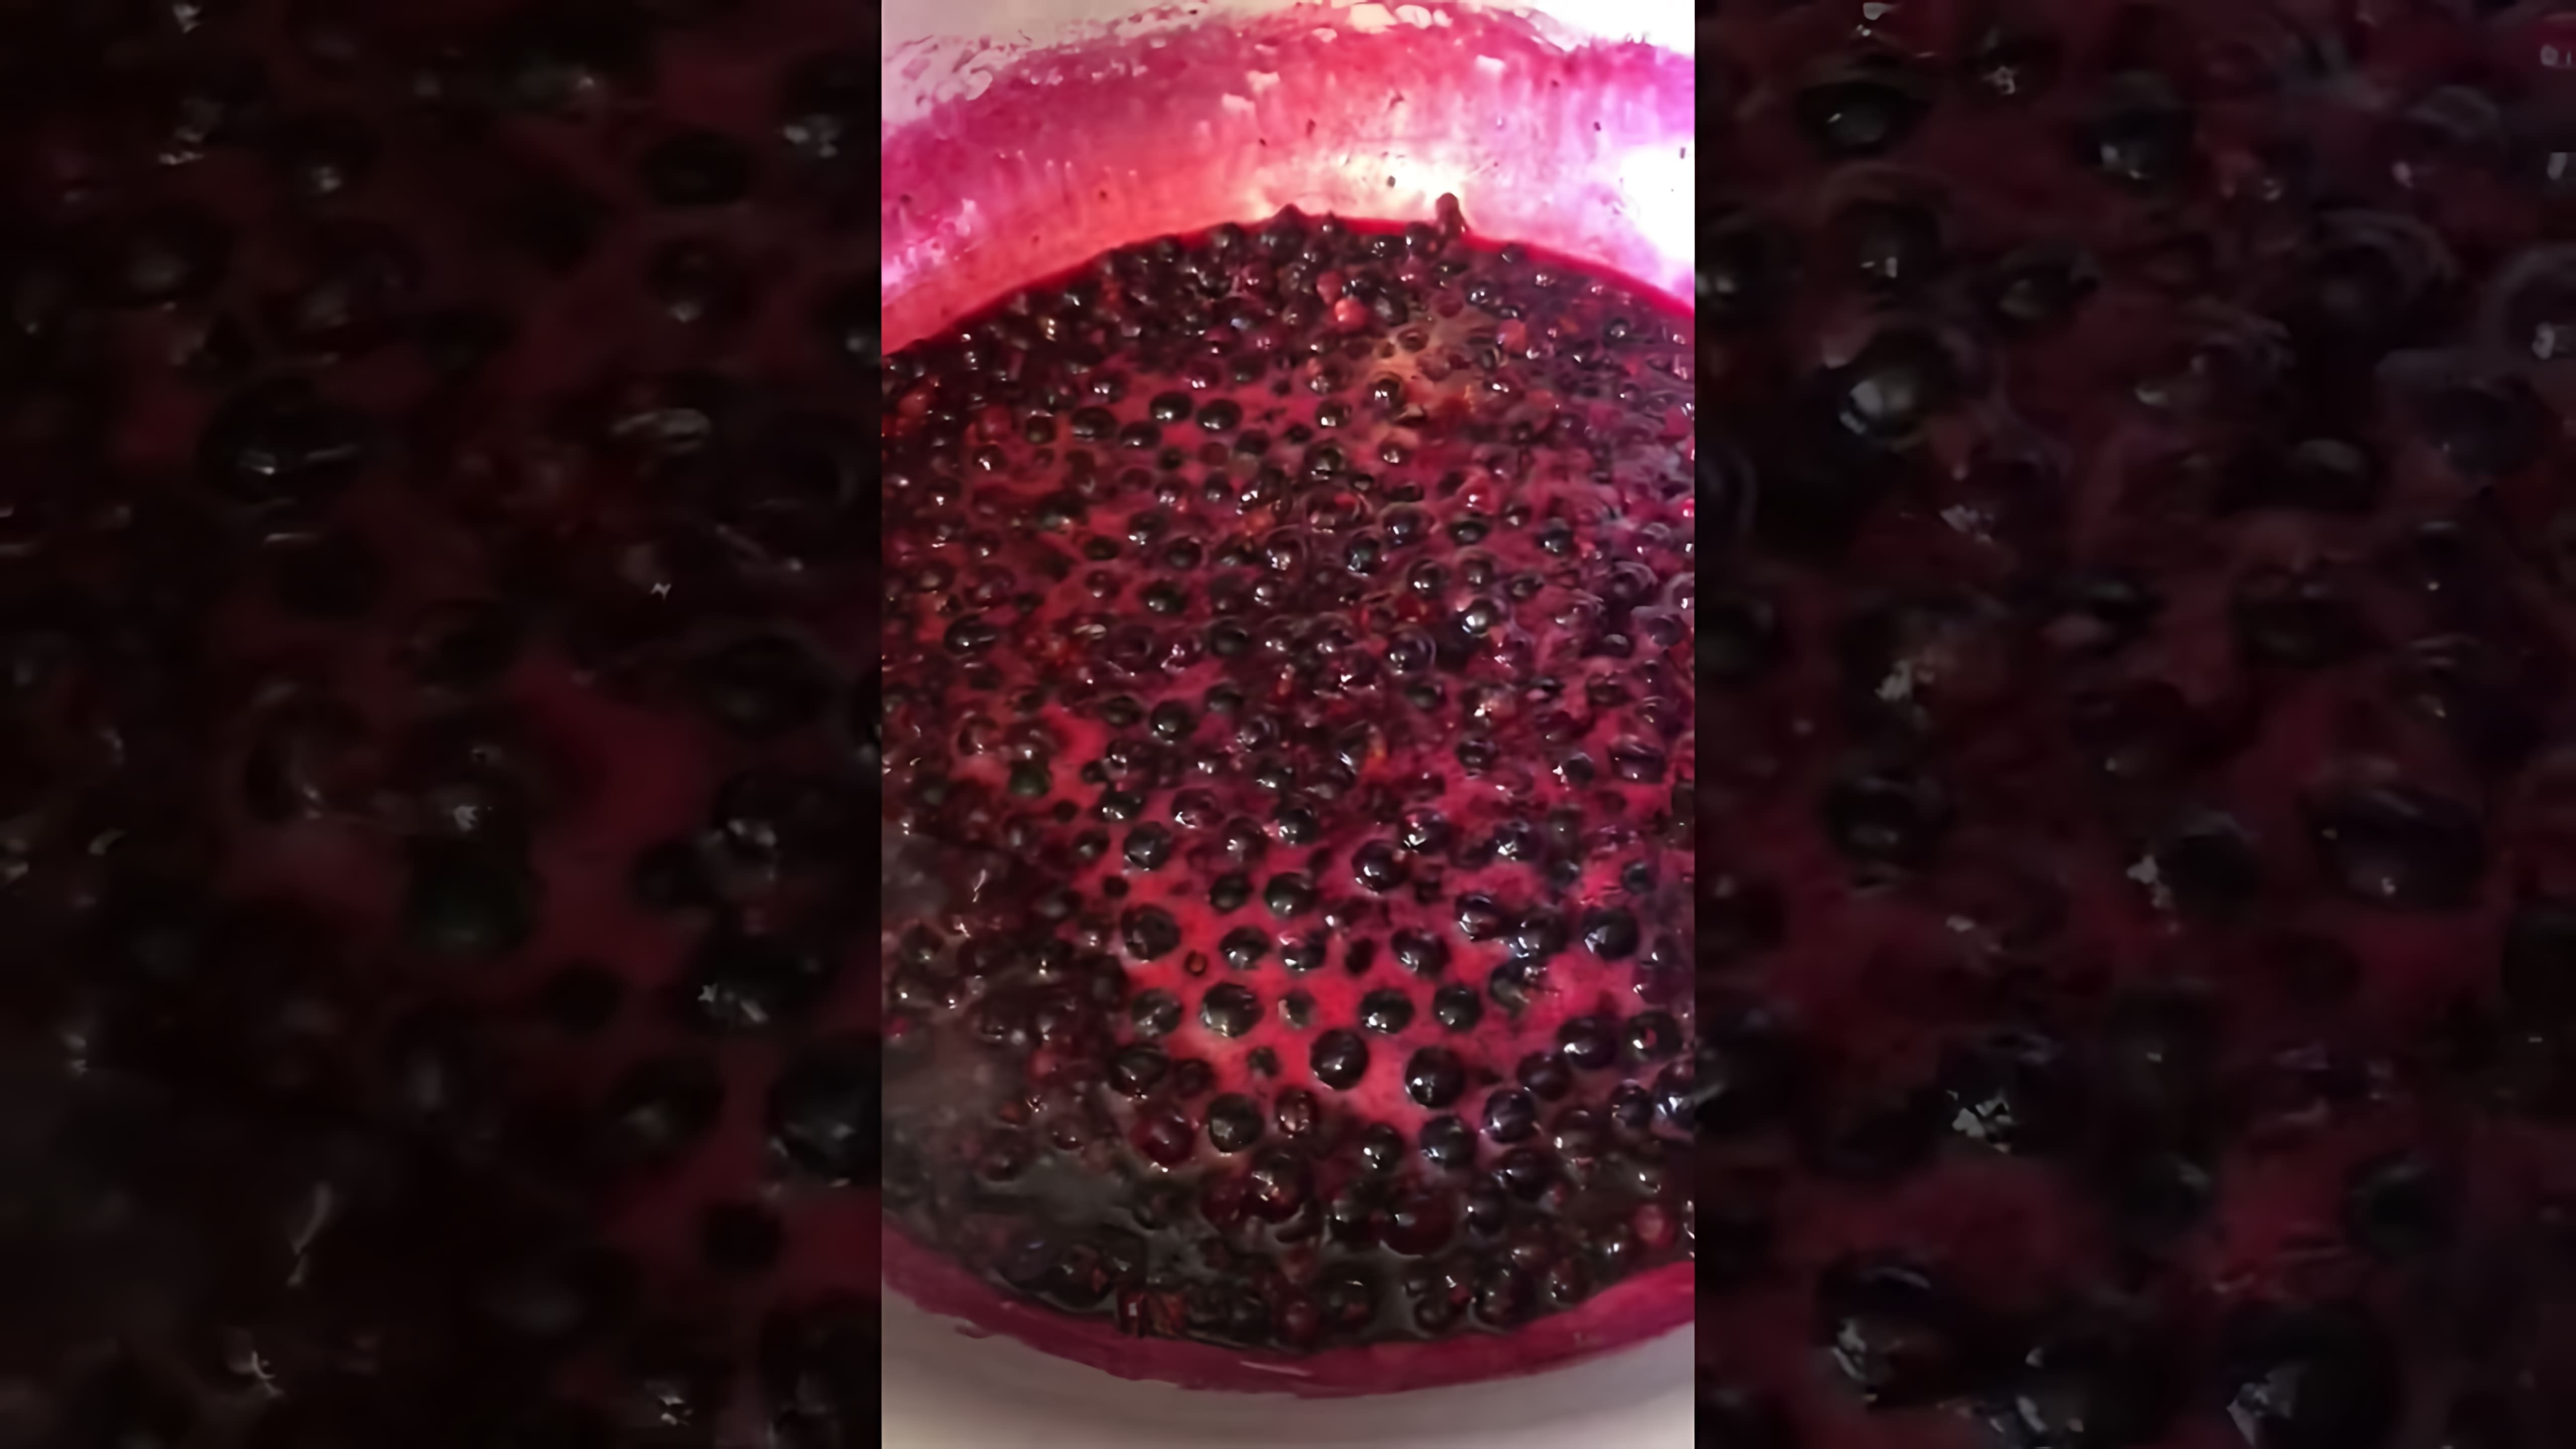 "Пятиминутка из чёрной смородины" - это видео-ролик, который длится всего пять минут и содержит рецепт приготовления вкусного и полезного десерта из чёрной смородины